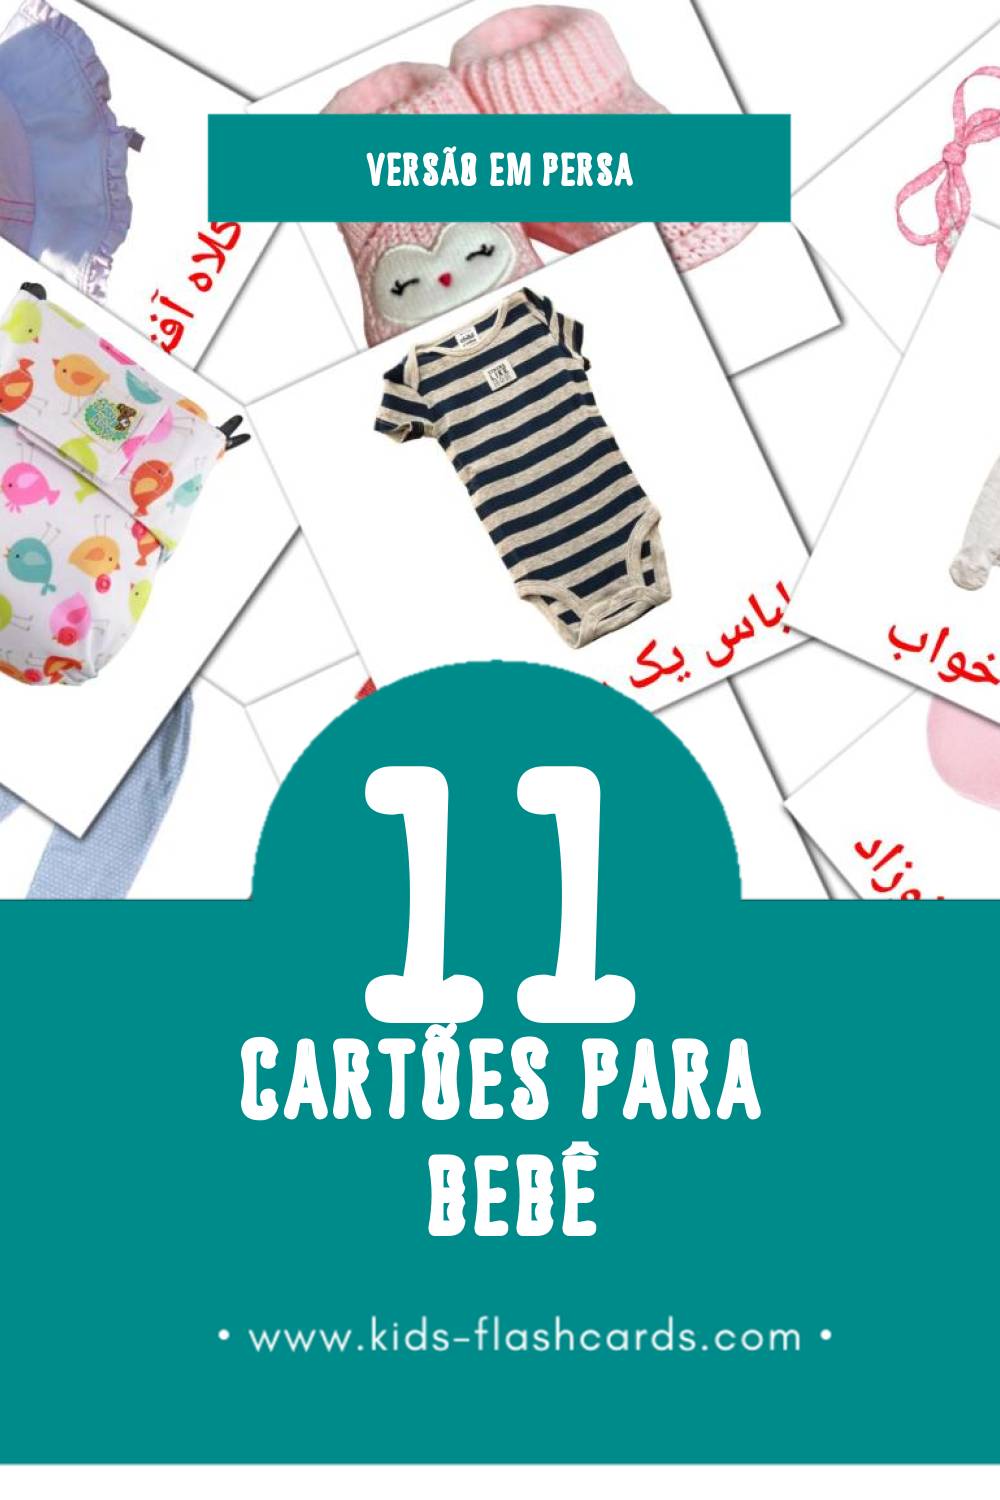 Flashcards de بچه Visuais para Toddlers (11 cartões em Persa)